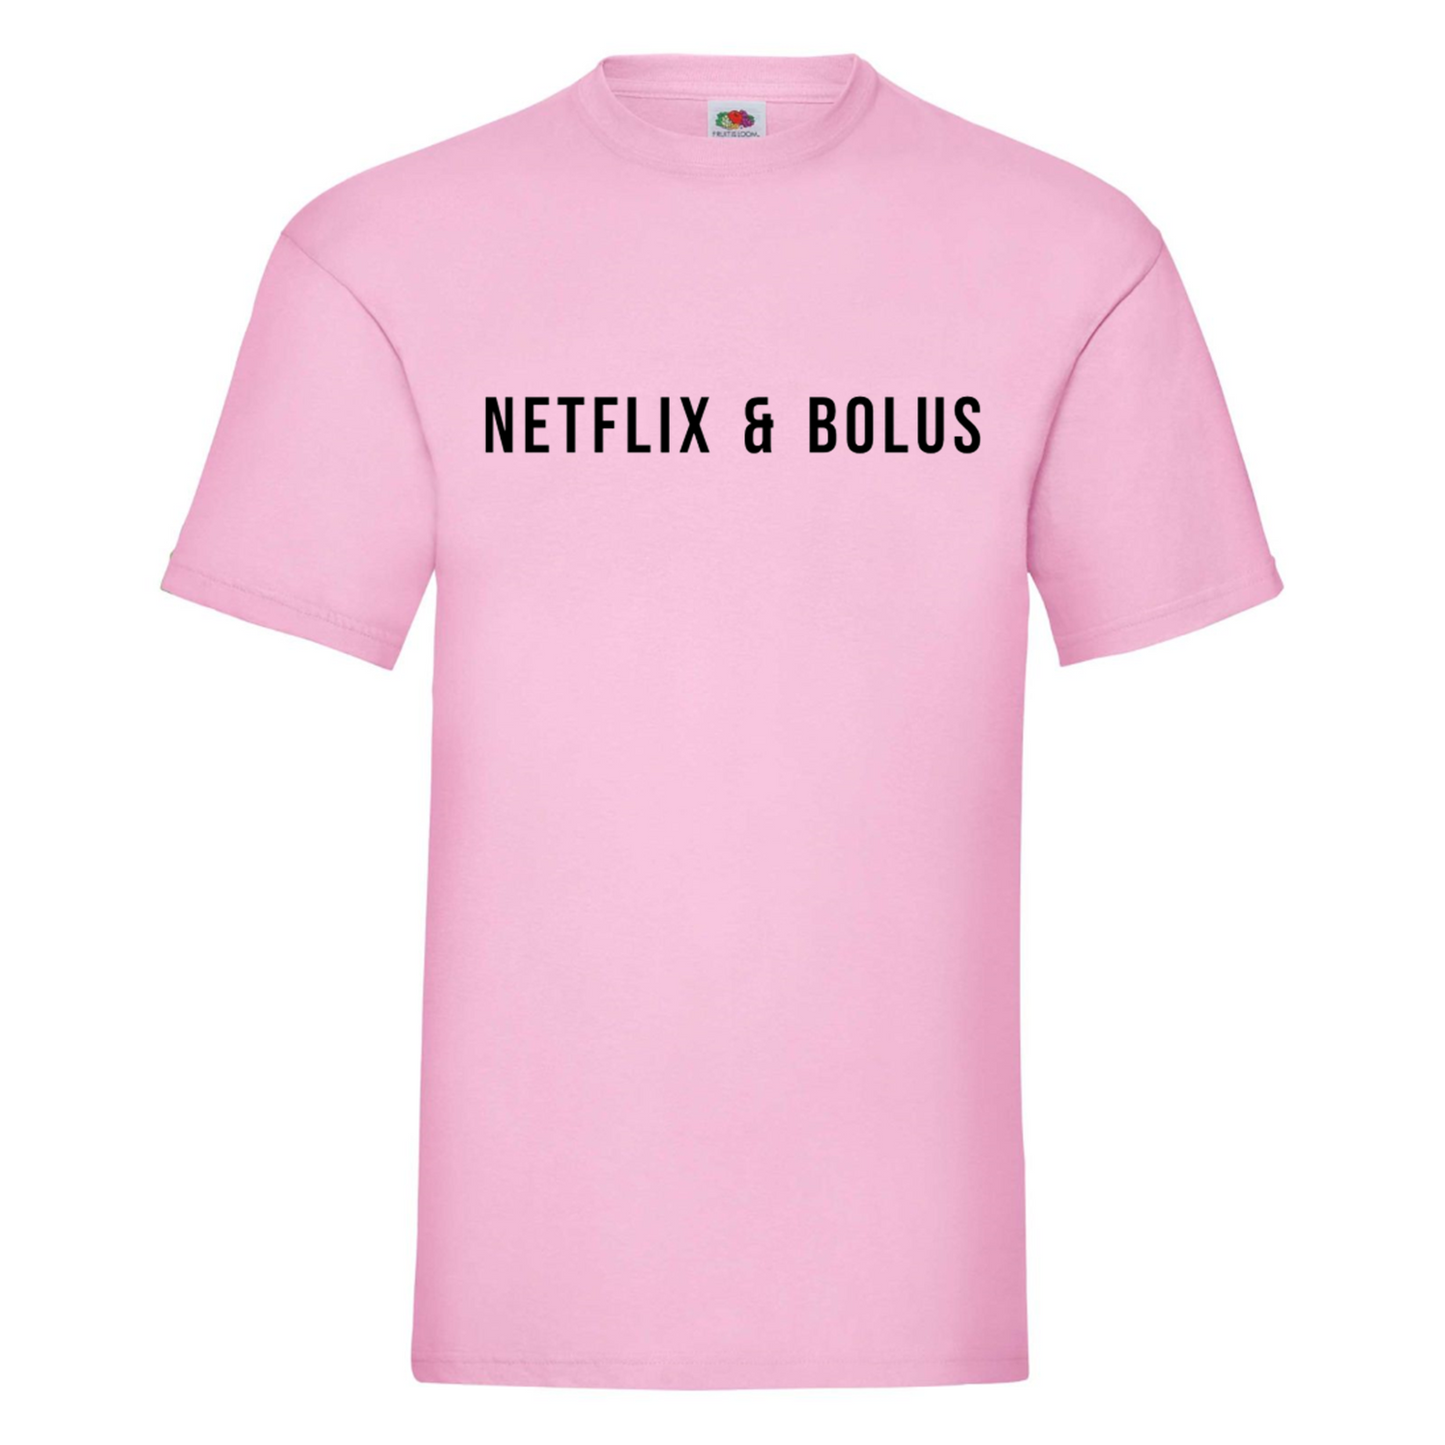 Netflix & Bolus Kids T Shirt